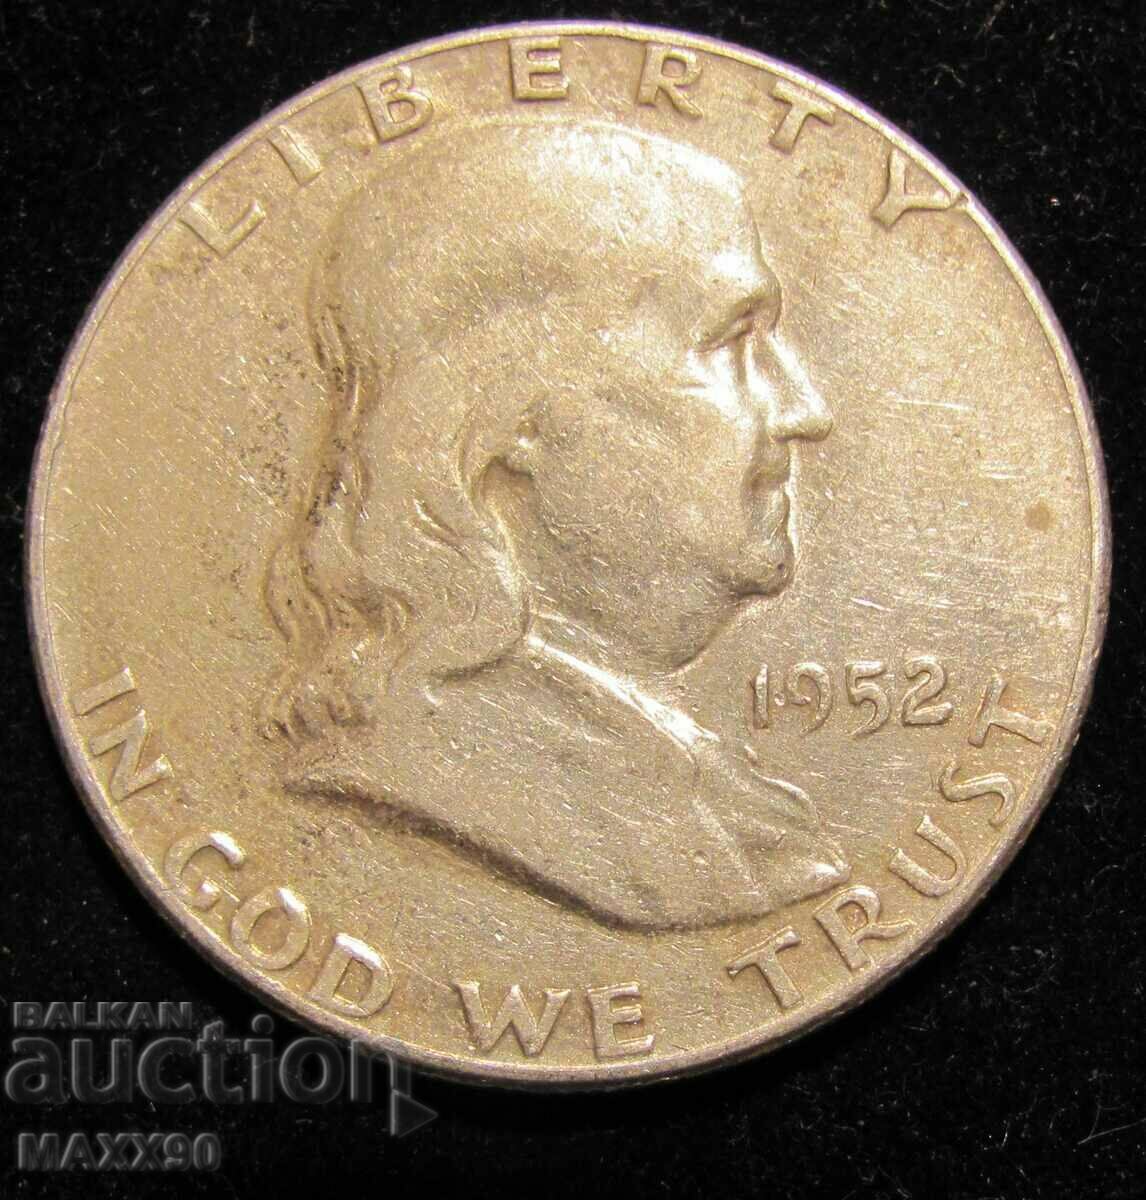 Half Dollar 1952